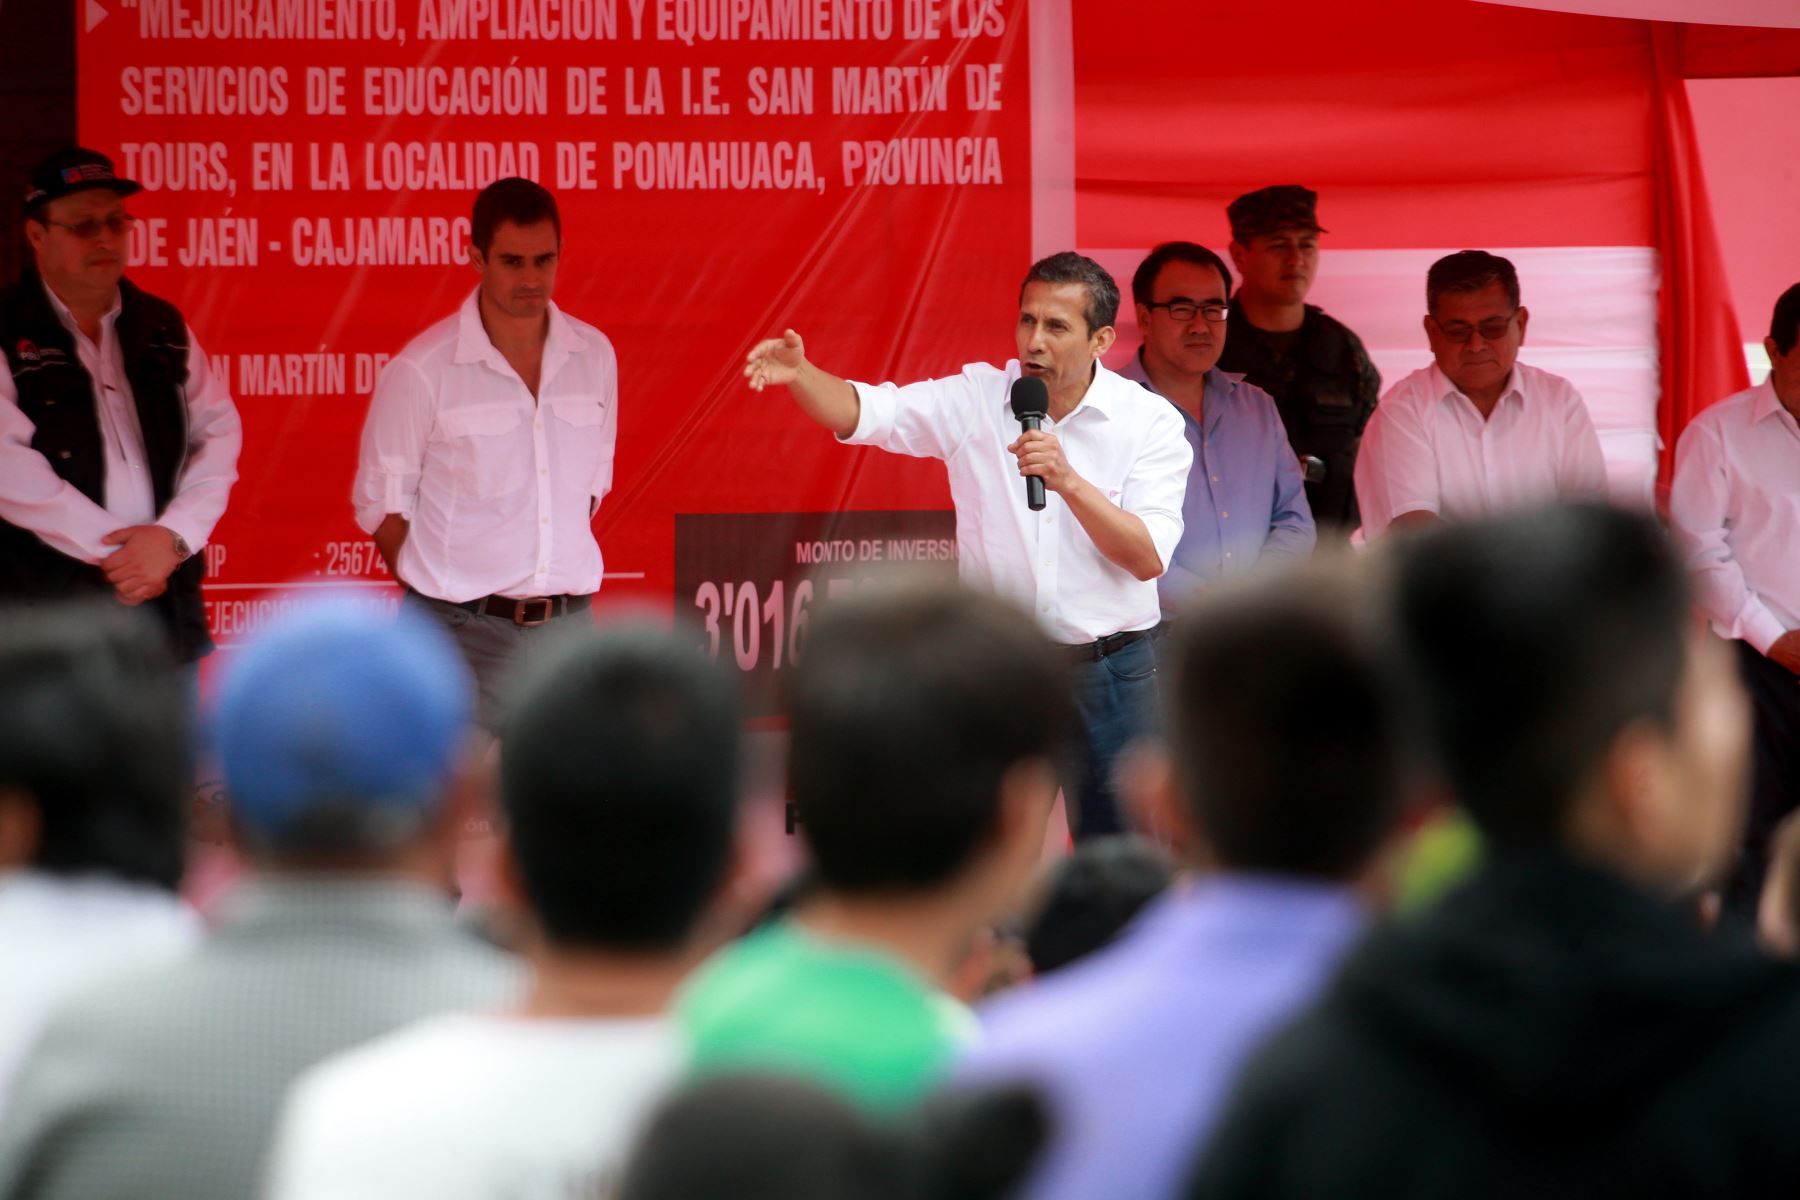 Presidente Ollanta Humala inauguró obras de mejoramiento, ampliación y equipamiento de la I.E. San Martín de Tours, distrito de Pomahuaca, provincia de Jaén (Cajamarca).Foto: ANDINA/
Prensa Presidencia.